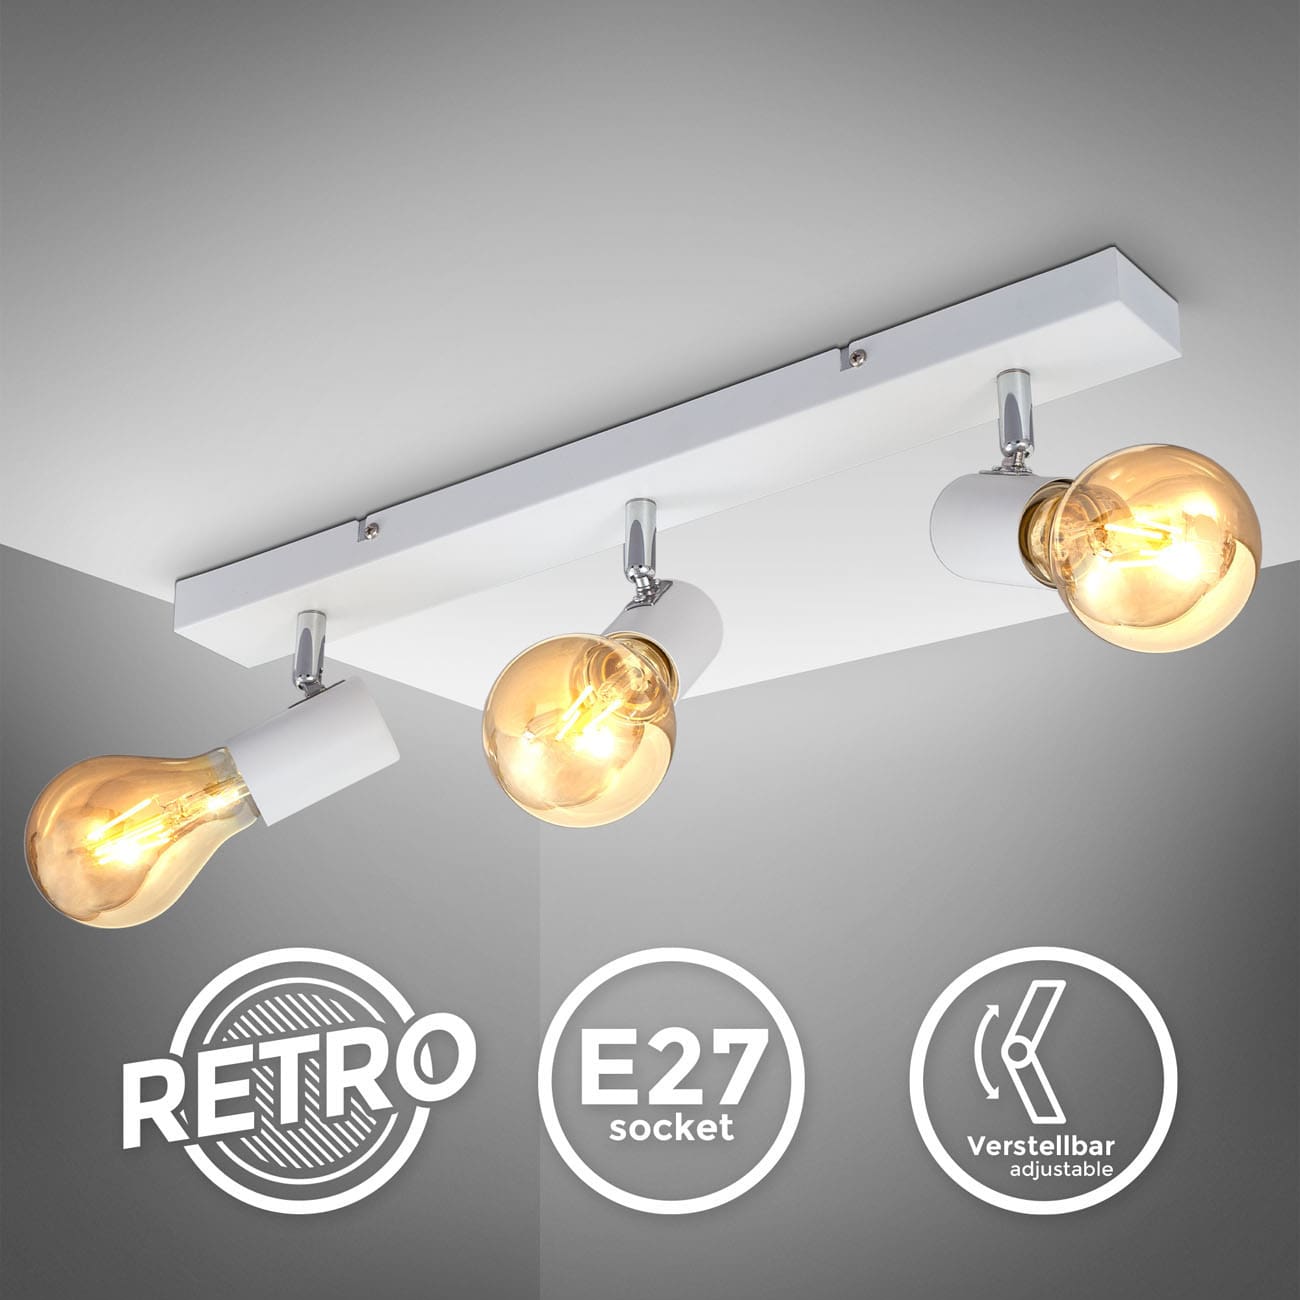 Retro-Deckenleuchte 48x5cm - 3-flammig - Wohnzimmer-Deckenlampe Industrial-Design Metall E27 LED/Halogen max 60W 230V drehbar schwenkbar| weiss - 2